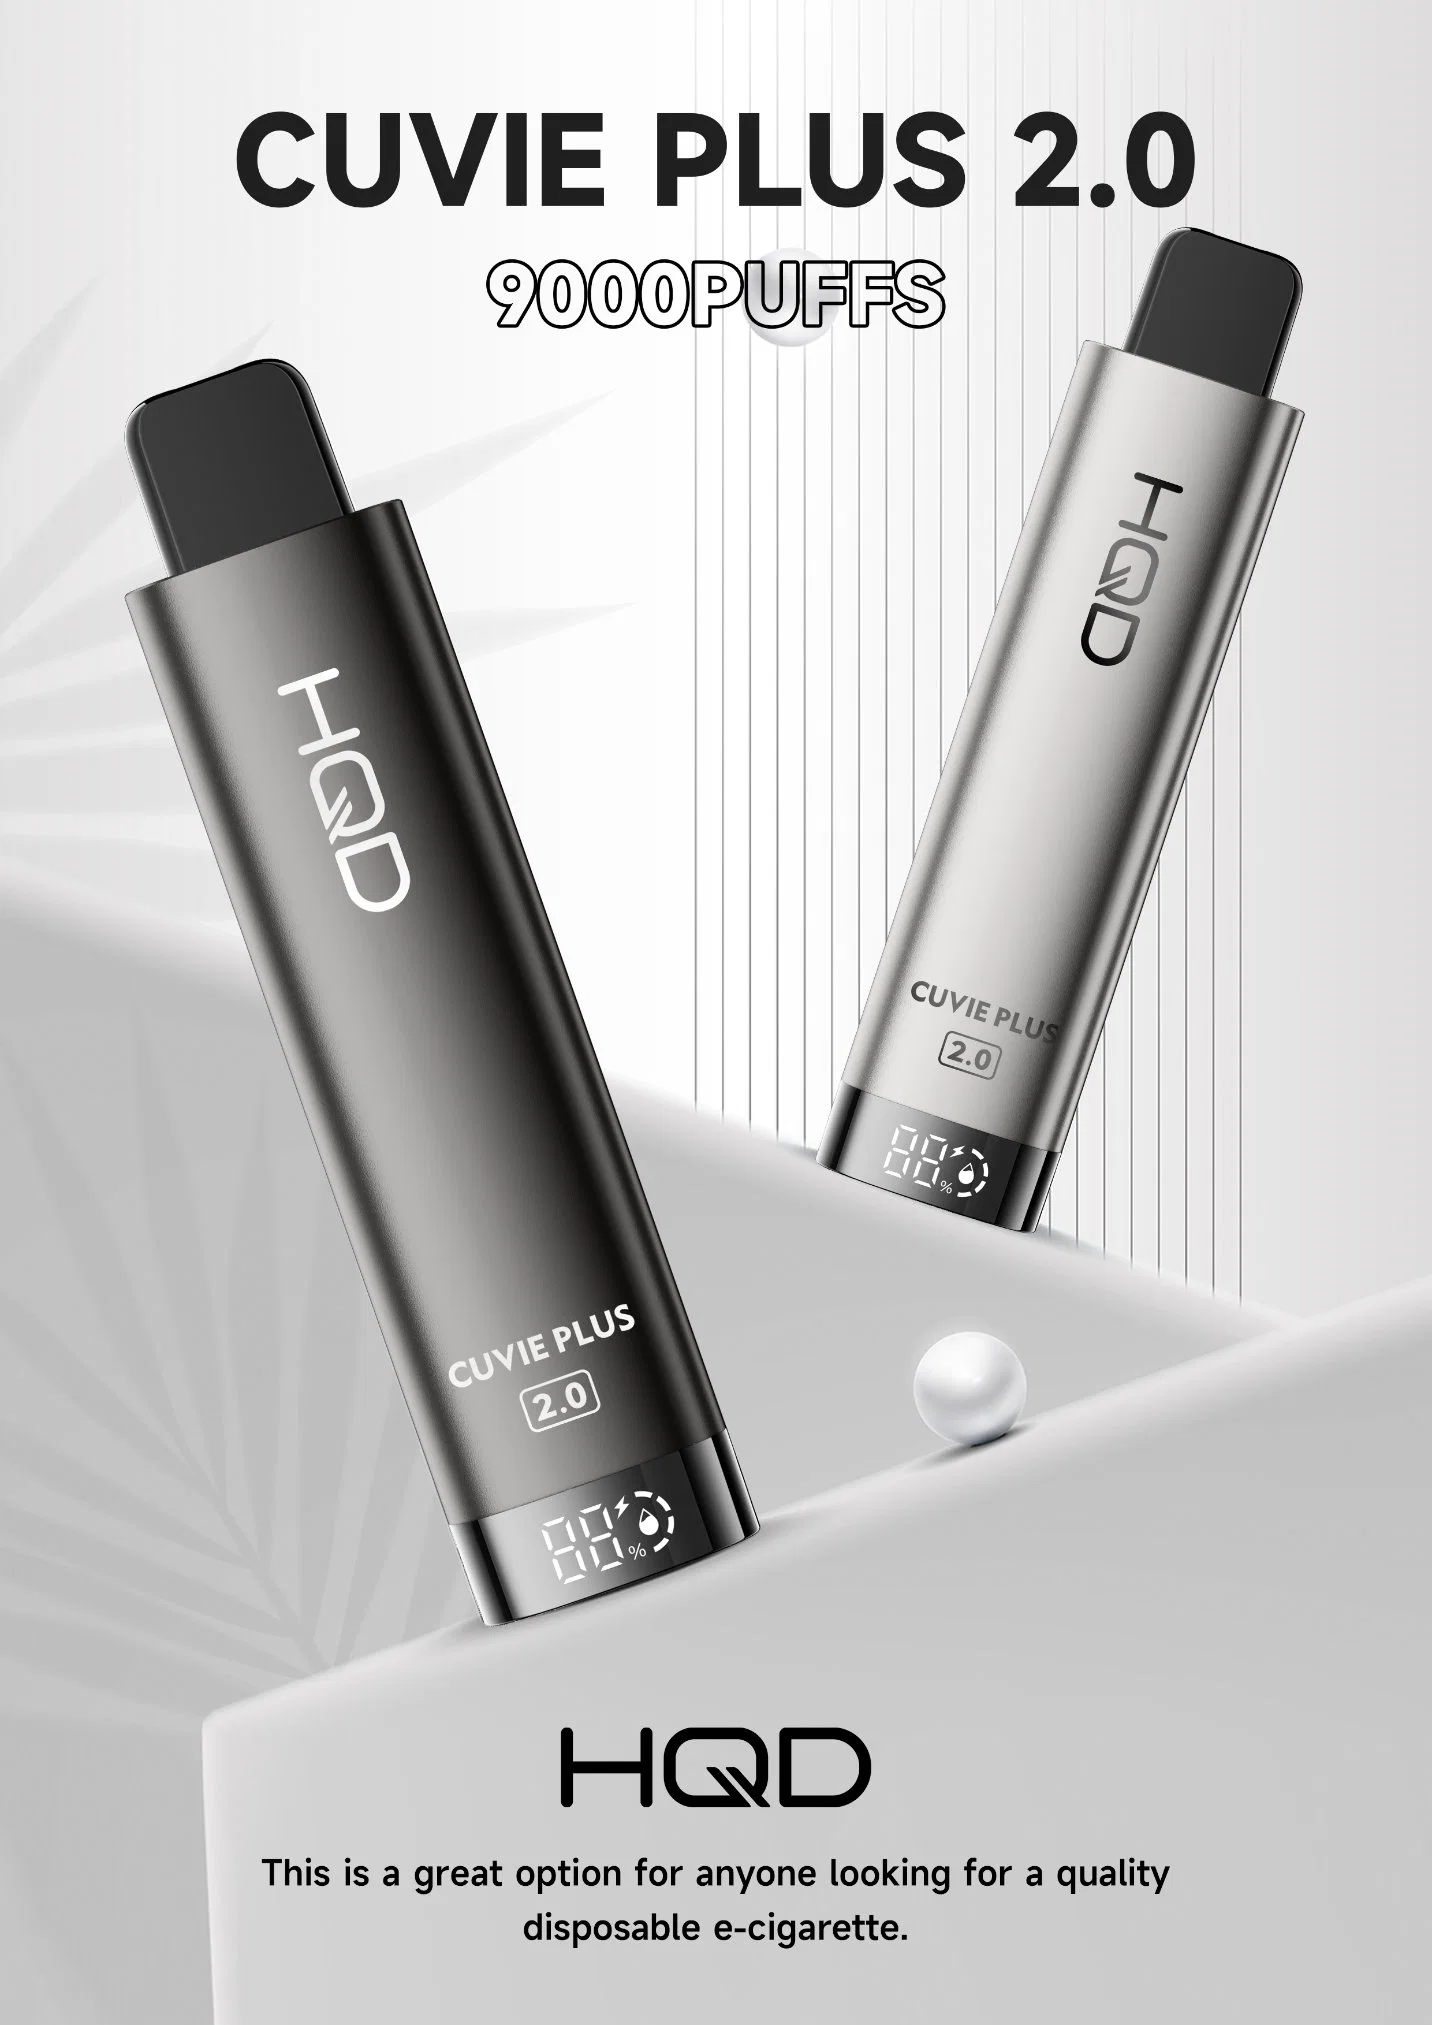 Hqd Cuvie Plus Mise à jour Cigarette électronique jetable rechargeable Vaping, 5% de nicotine Service OEM disponible.